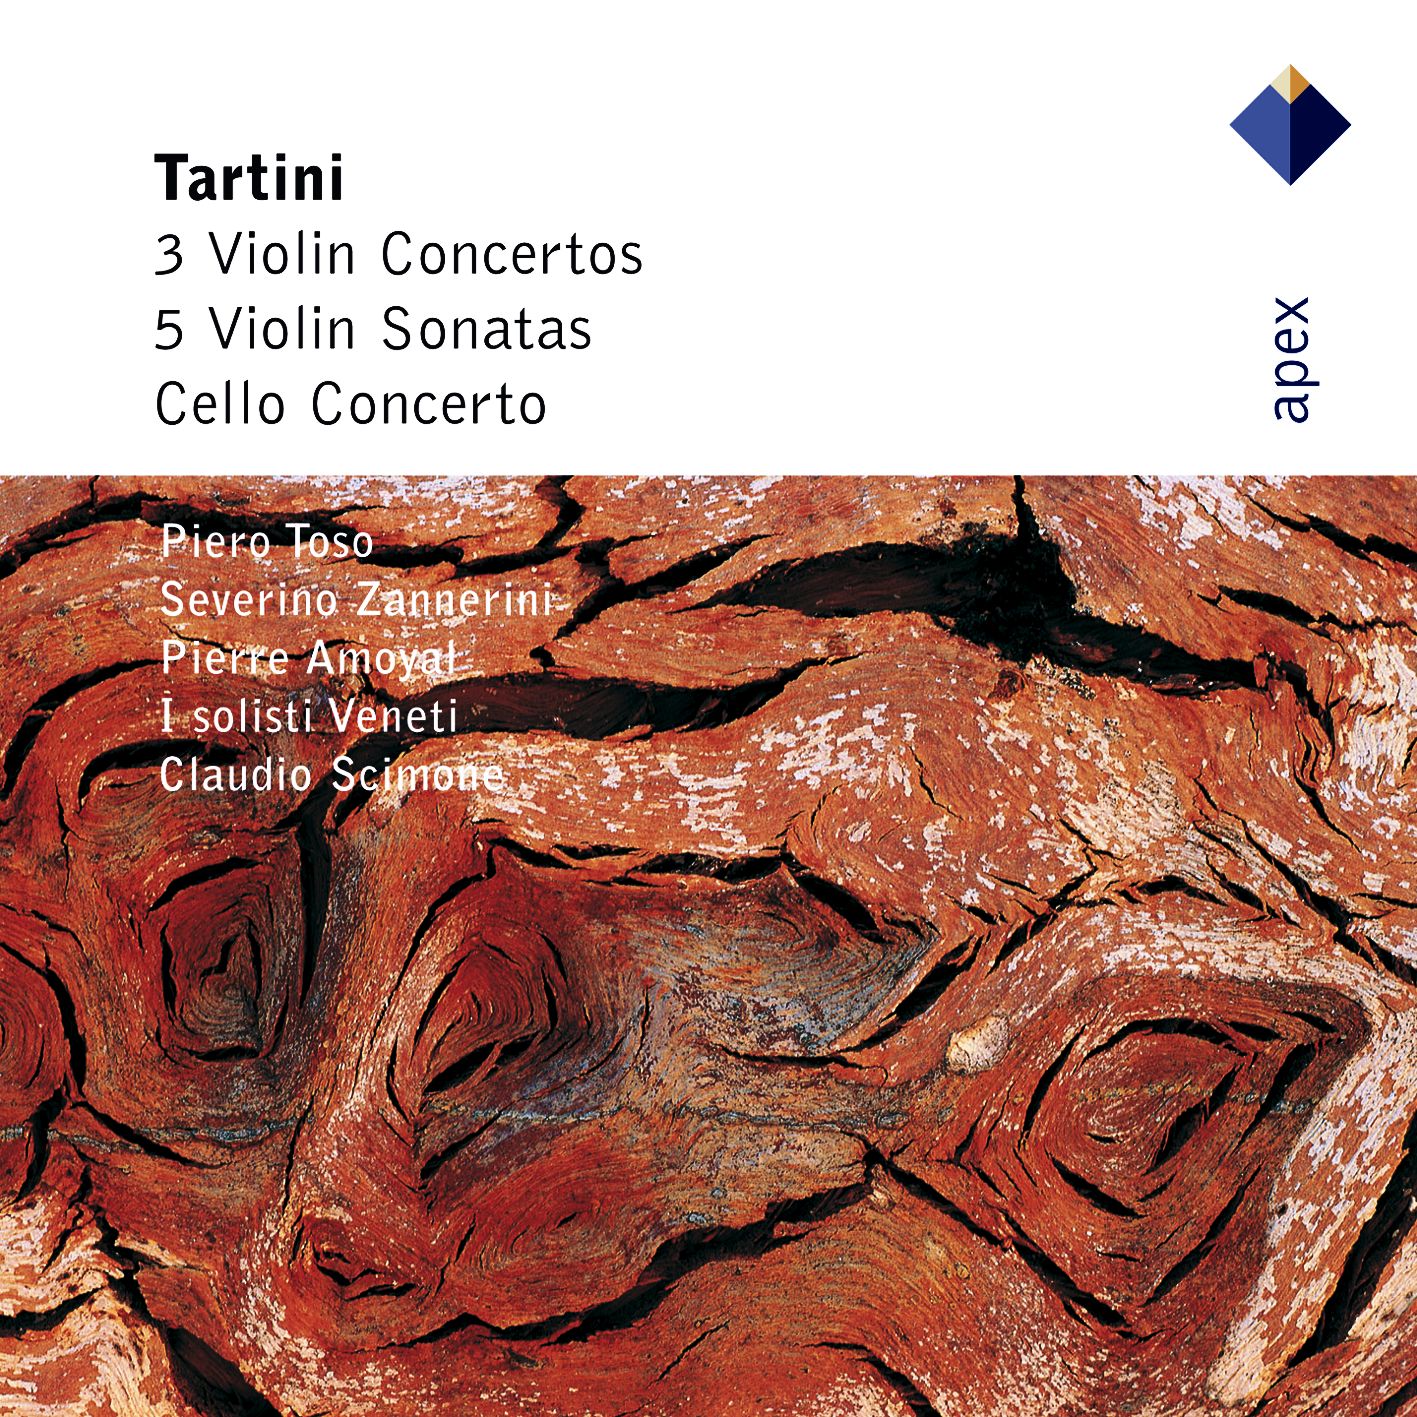 Tartini : Violin Sonata in C major Op.2 No.6 : III Presto assai